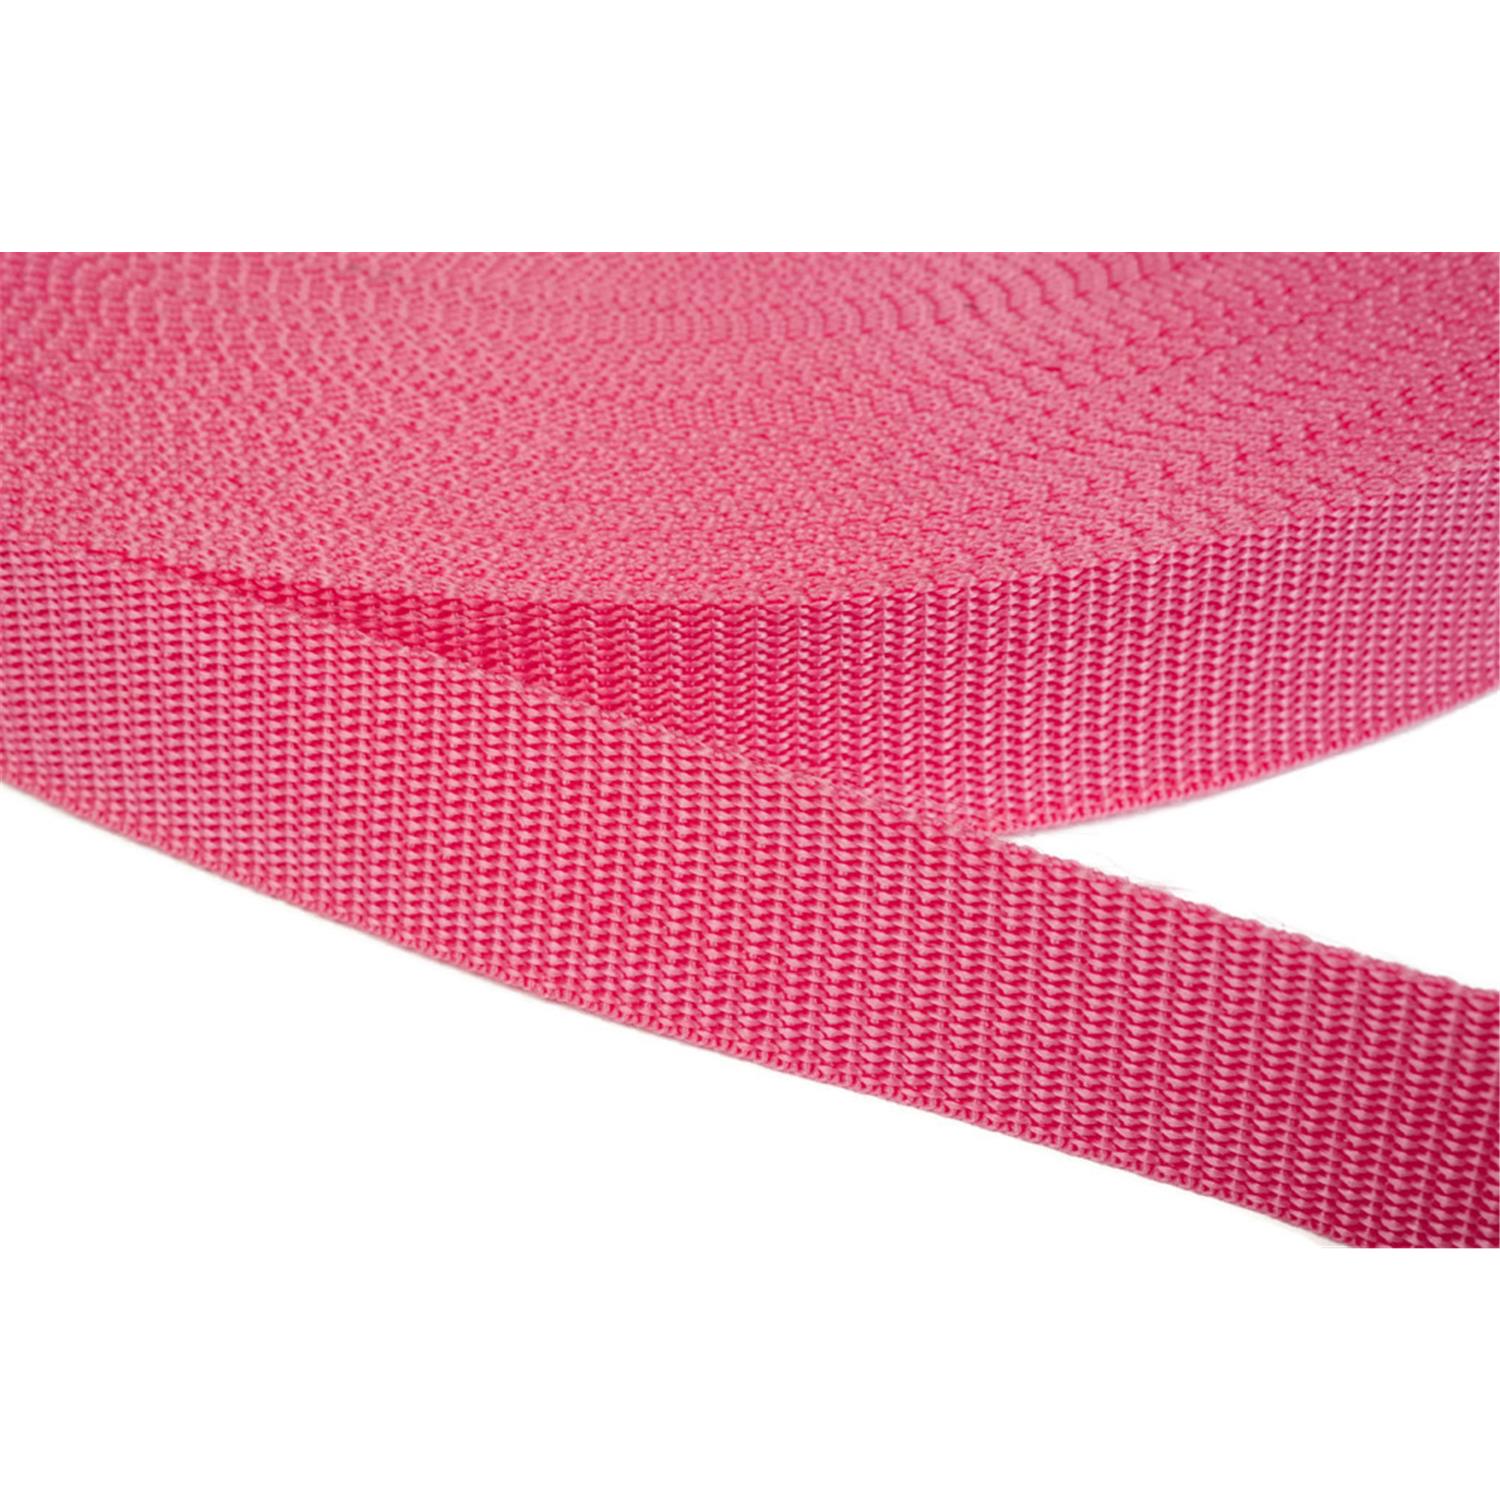 Gurtband 15mm breit aus Polypropylen in 41 Farben 13 - pink 12 Meter